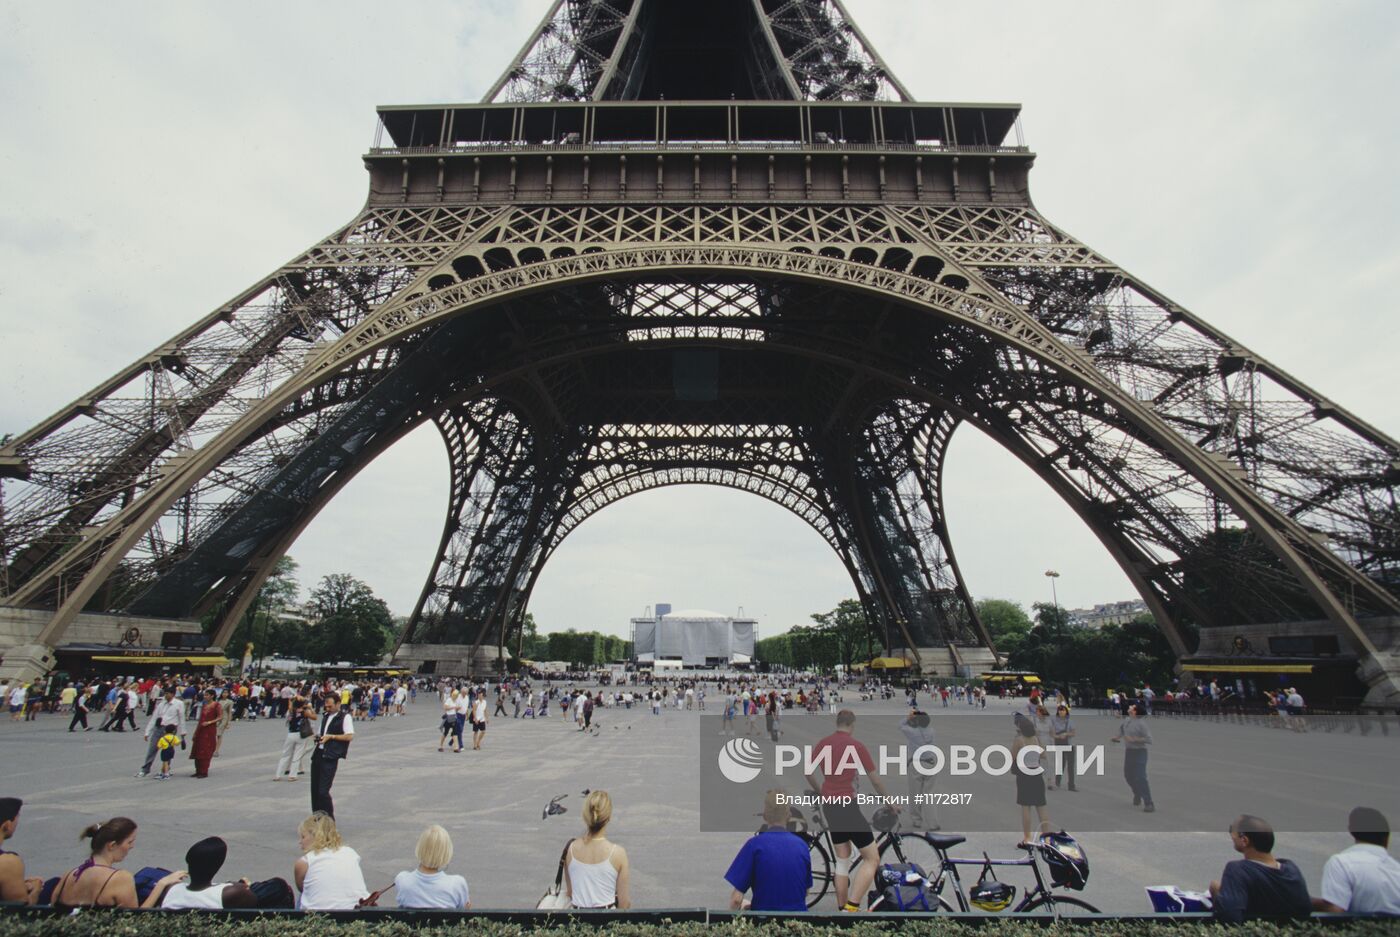 Фрагмент Эйфелевой башни в Париже